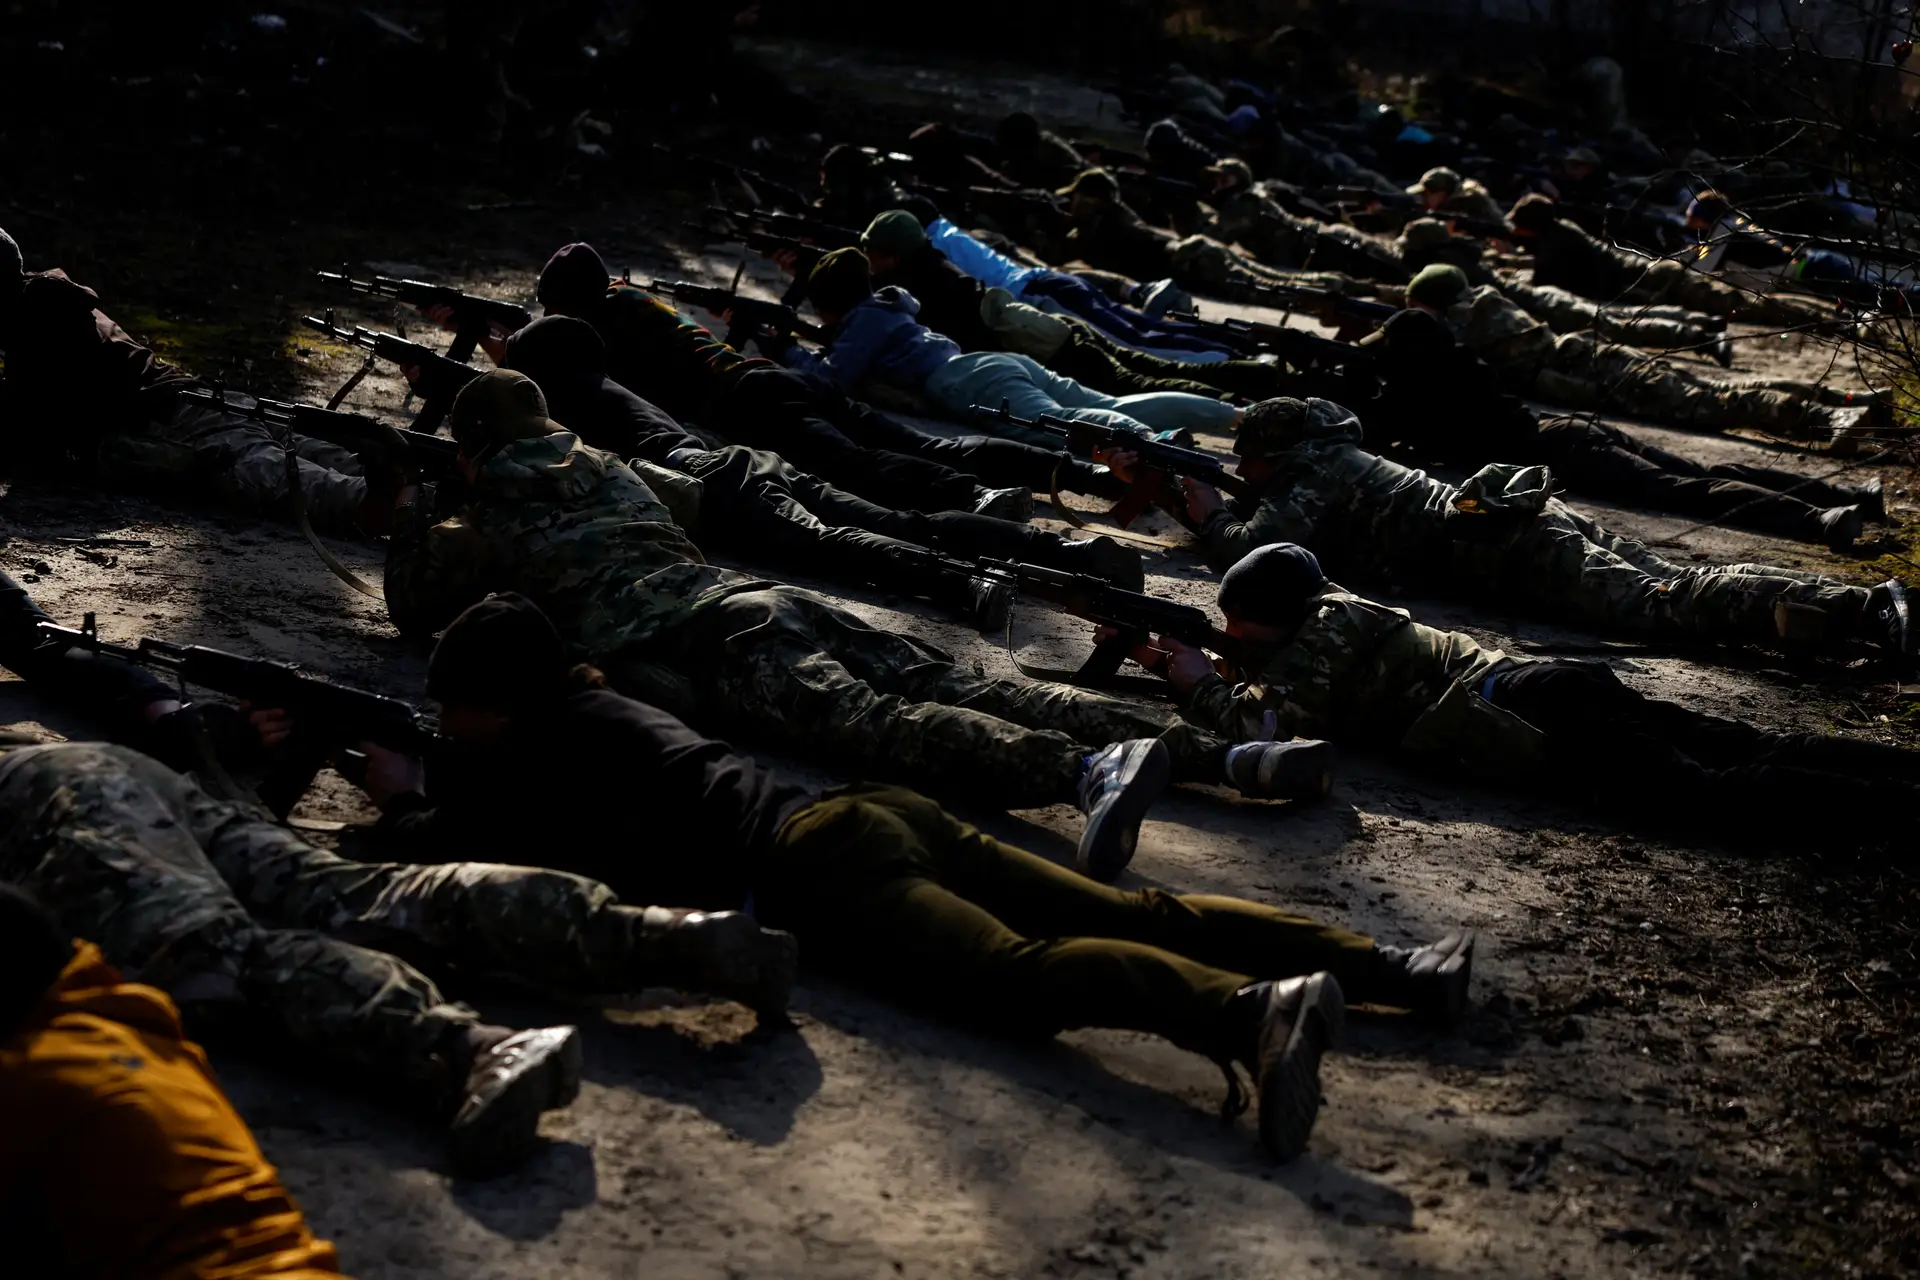 30 ucranianos morreram ao tentar cruzar a fronteira para evitar alistamento